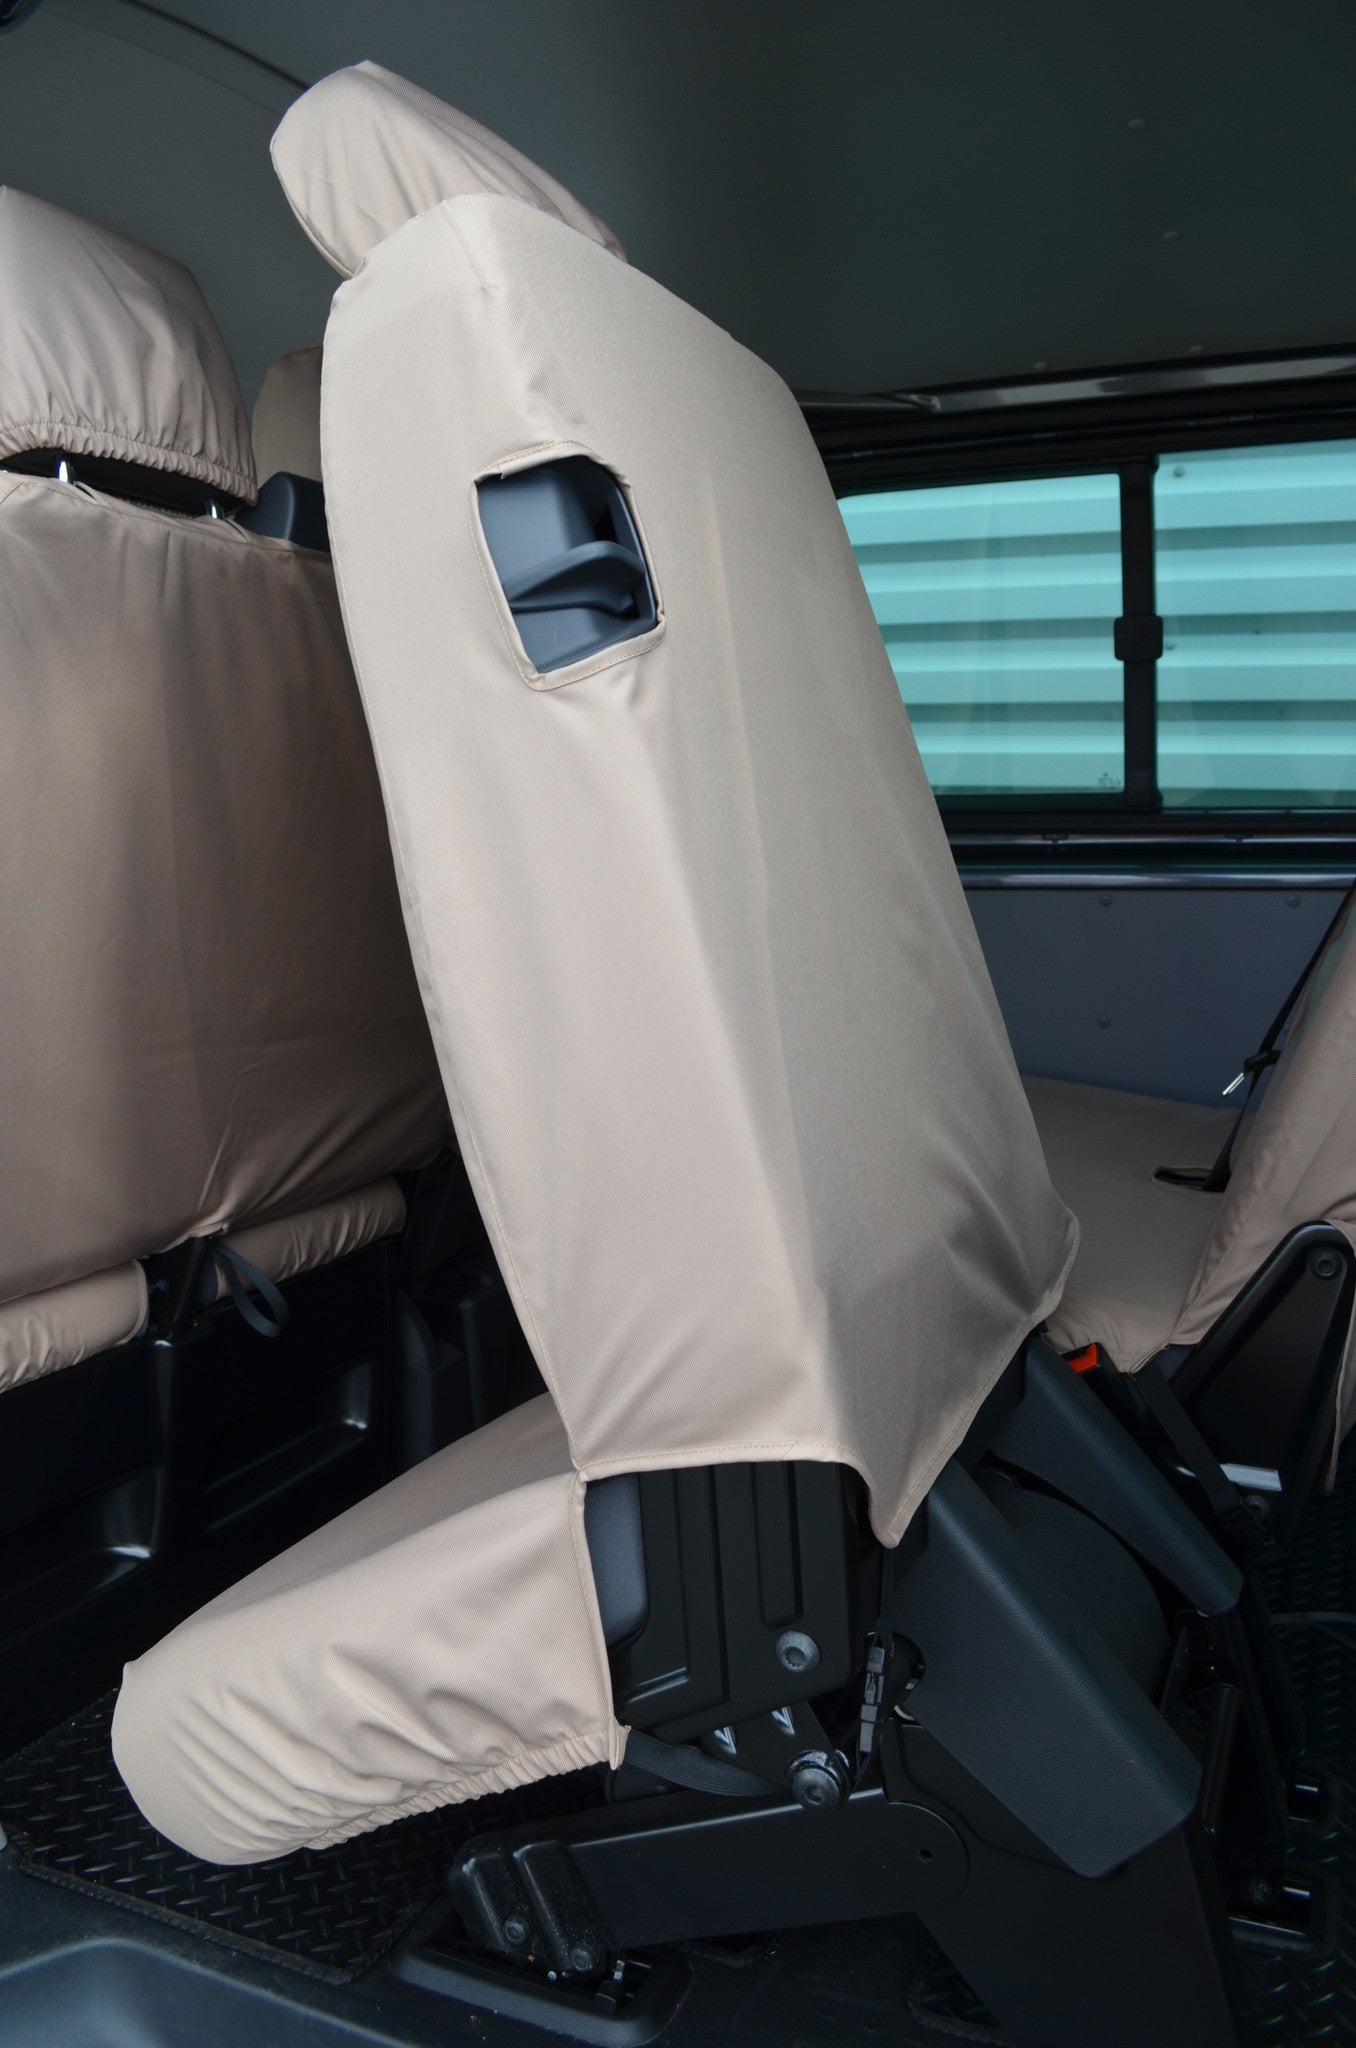 VW Volkswagen Transporter T5 Kombi 2010 - 2015 Rear Seat Covers  Turtle Covers Ltd